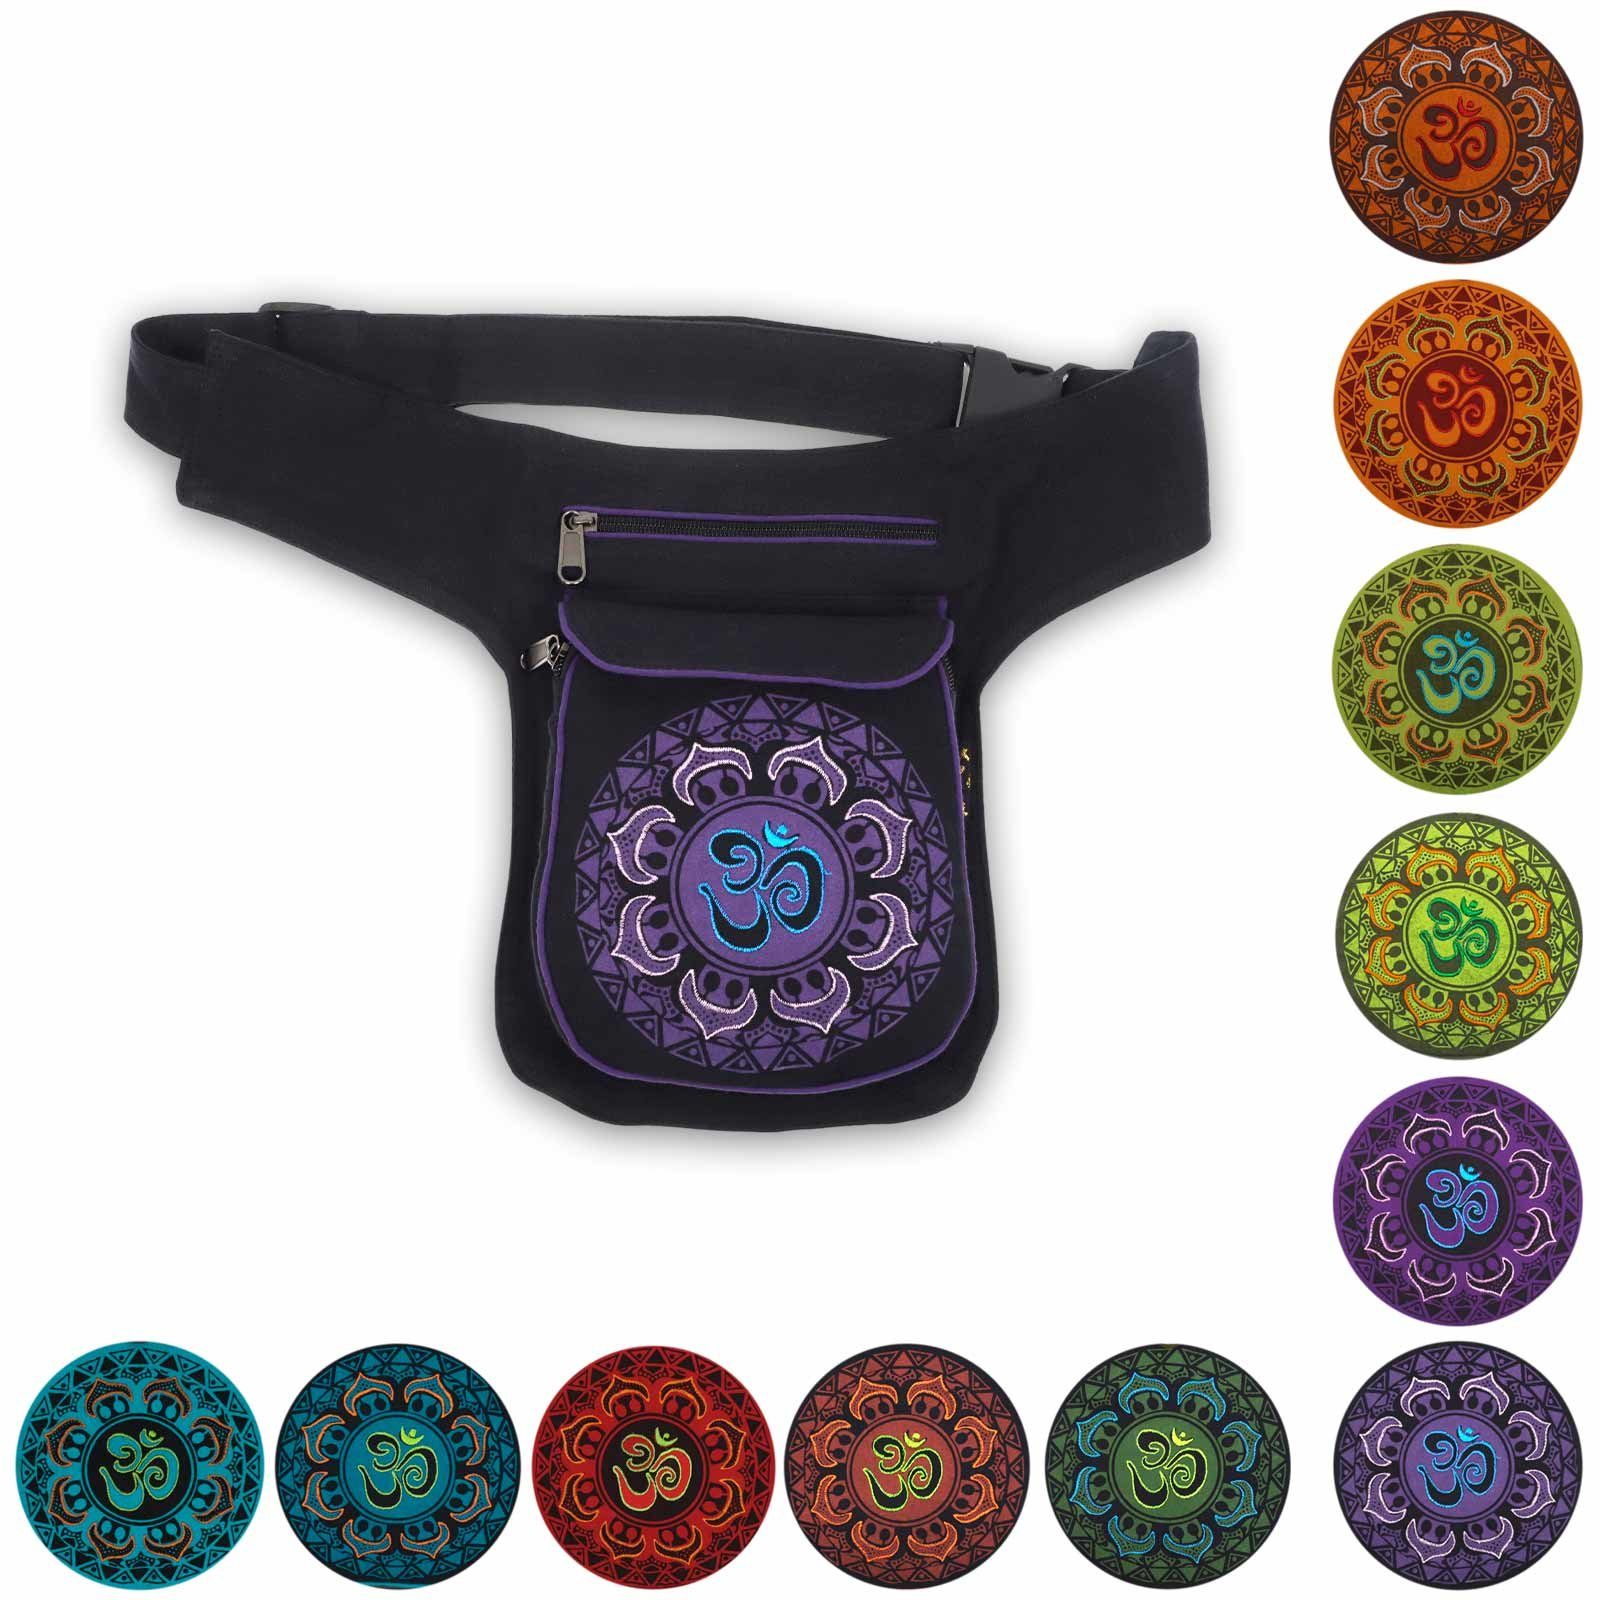 KUNST UND MAGIE Bauchtasche OM Mandala Bauchtasche Hüfttasche Mandala Gürteltasche Sidebag Black Purple